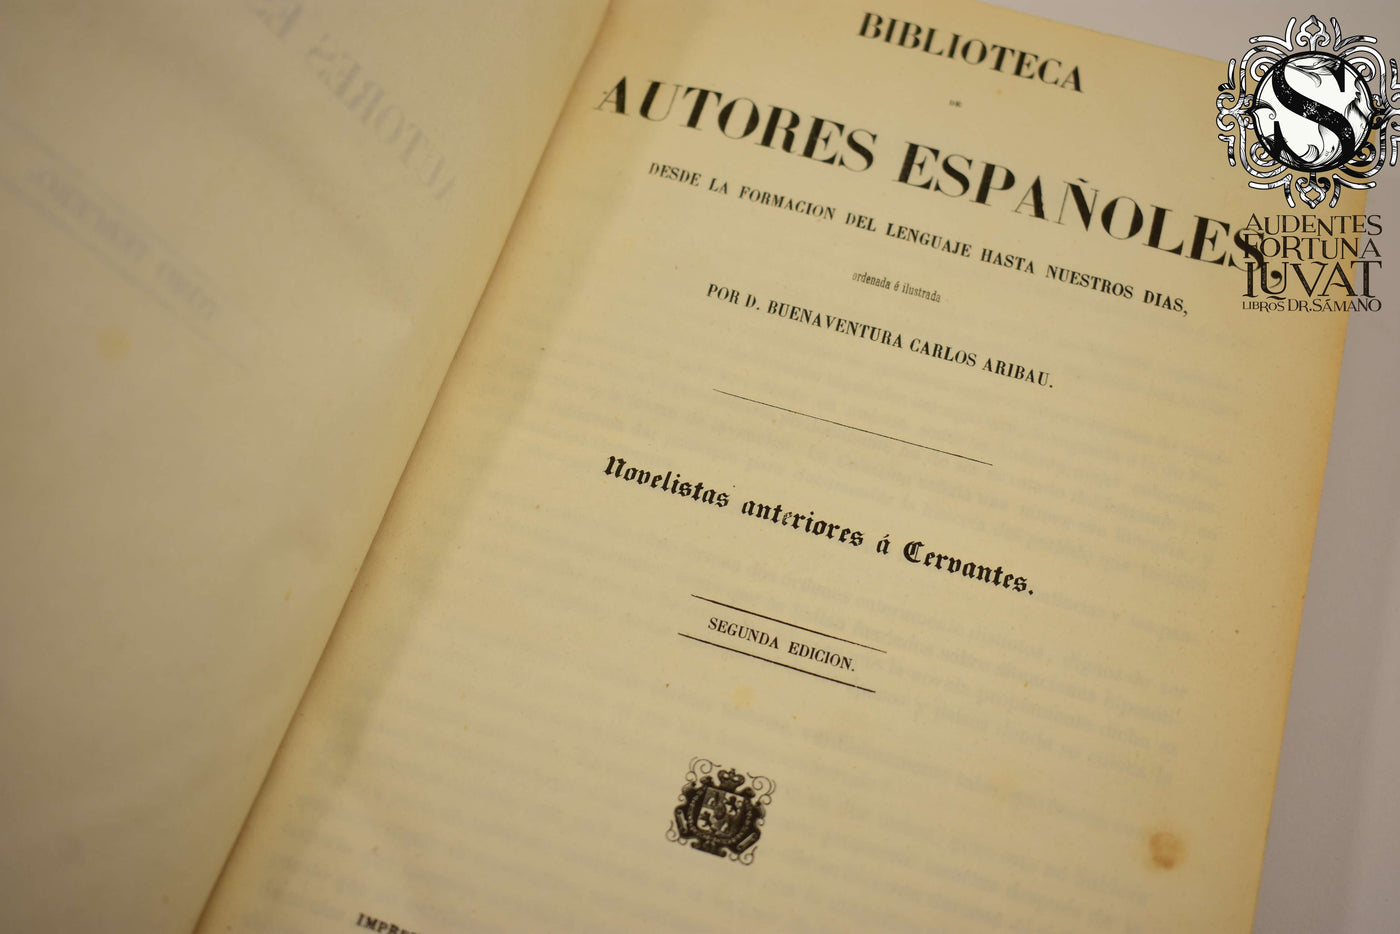 Biblioteca de Autores Españoles  44 vols. - D. BUENAVENTURA CARLOS ARIBAU